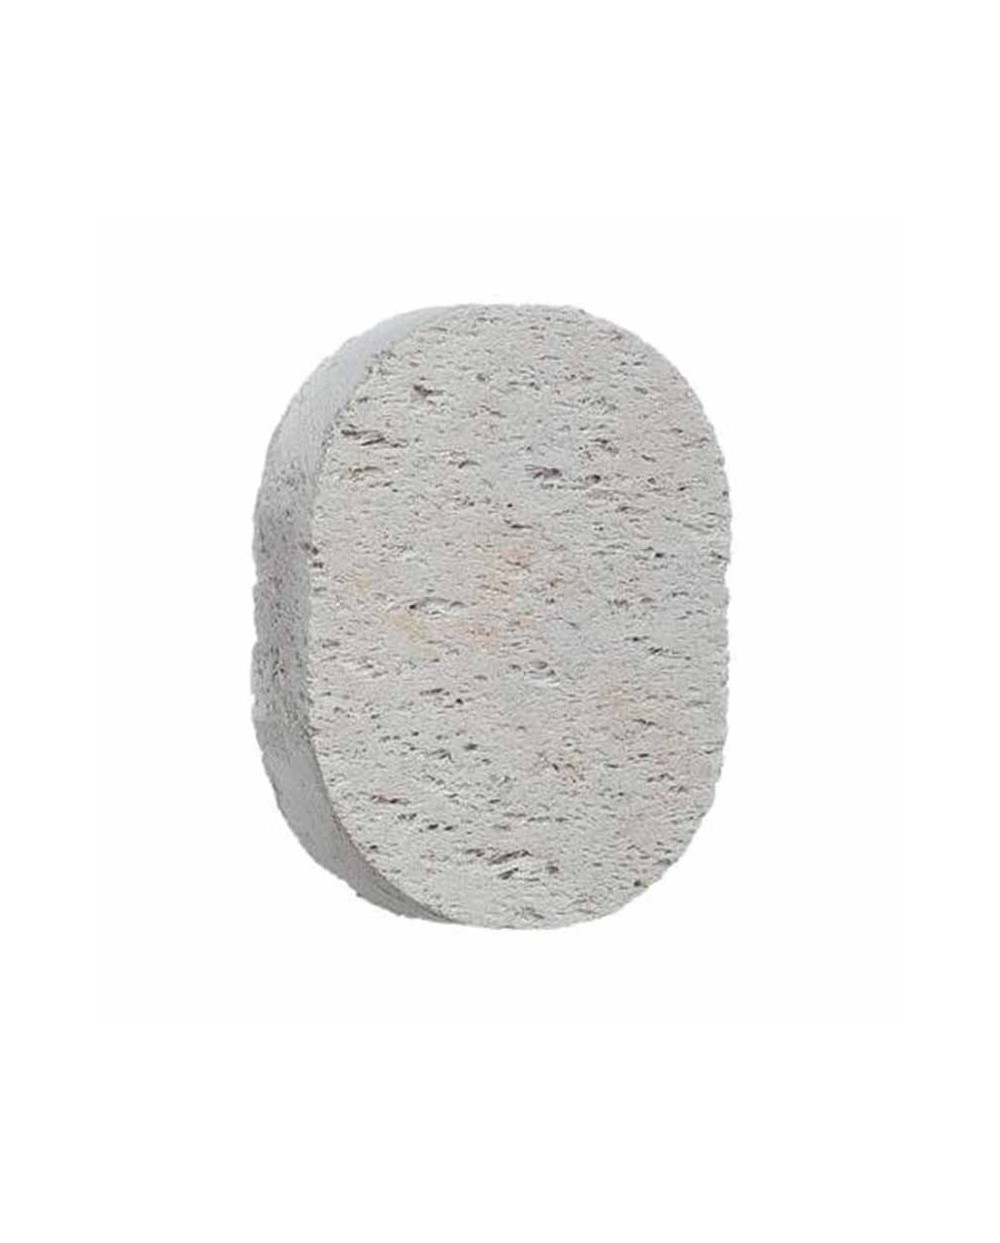 Piedra pómez natural de Beter. Elimina las durezas de los pies – 1 unidad